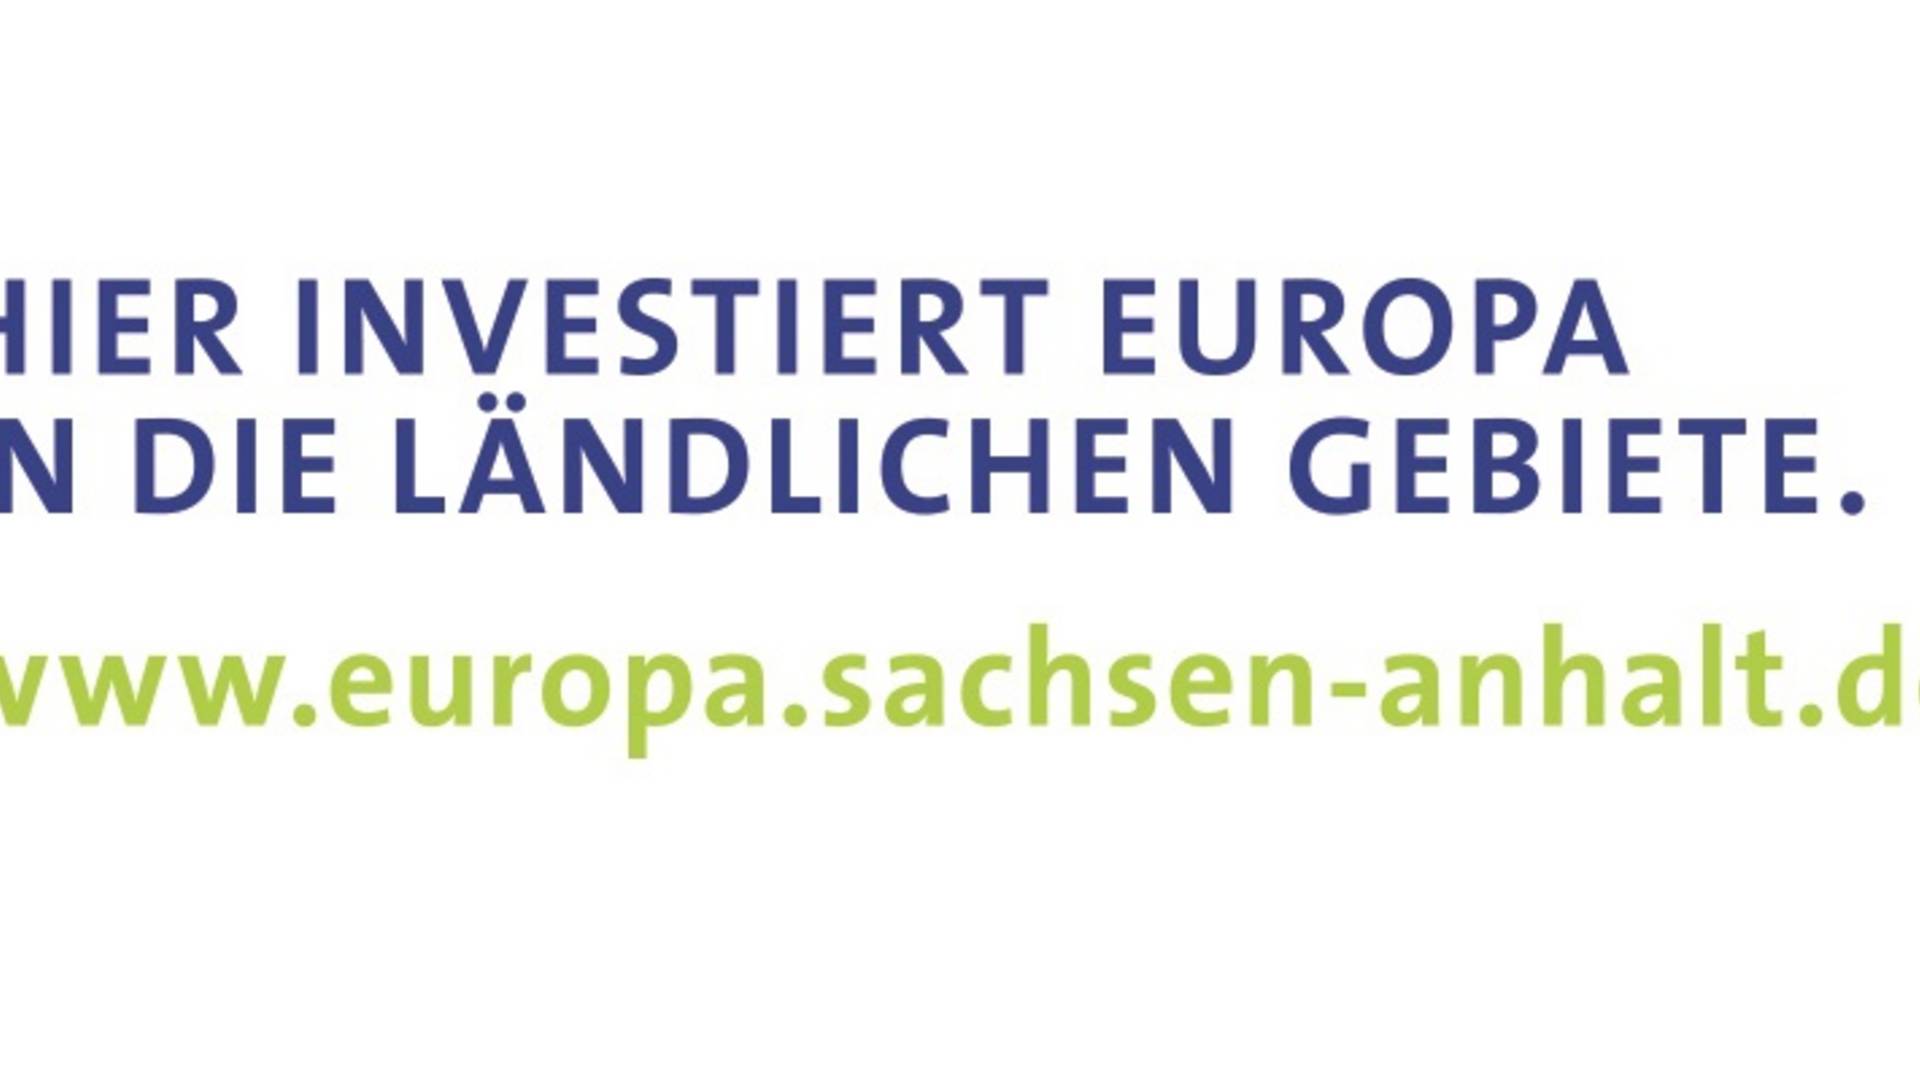 ELER hier.investiert.europa.in.laendl.gebiete 4c print © Europäischer Landwirtschaftsfonds für die Entwicklung des ländlichen Raums